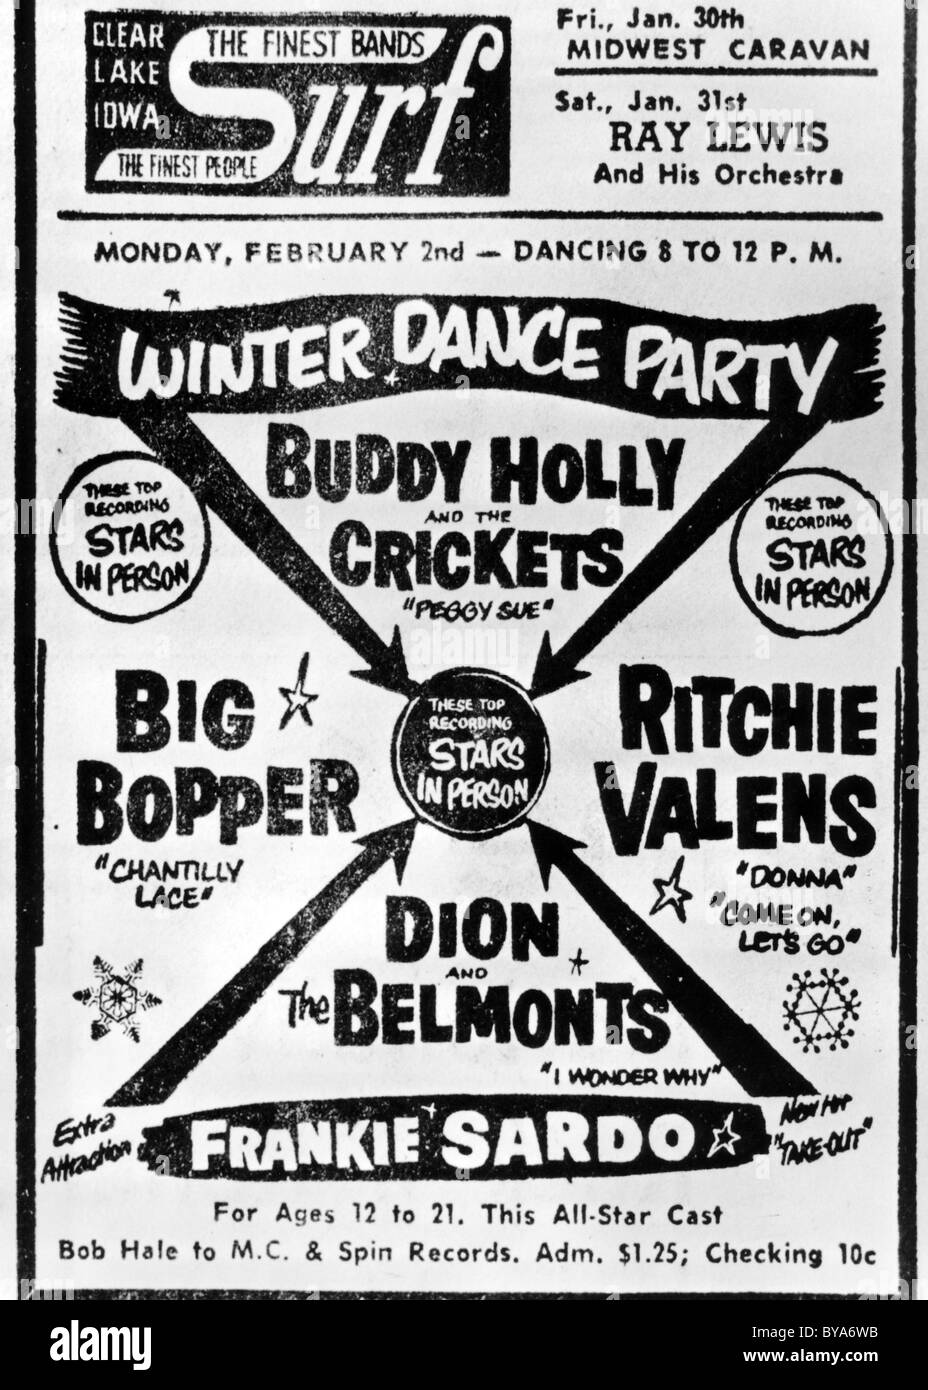 BUDDY HOLLY und die CRICKETS Poster zum letzten Konzert am 2. Februar 1959 in Clear Lake, Iowa Stockfoto